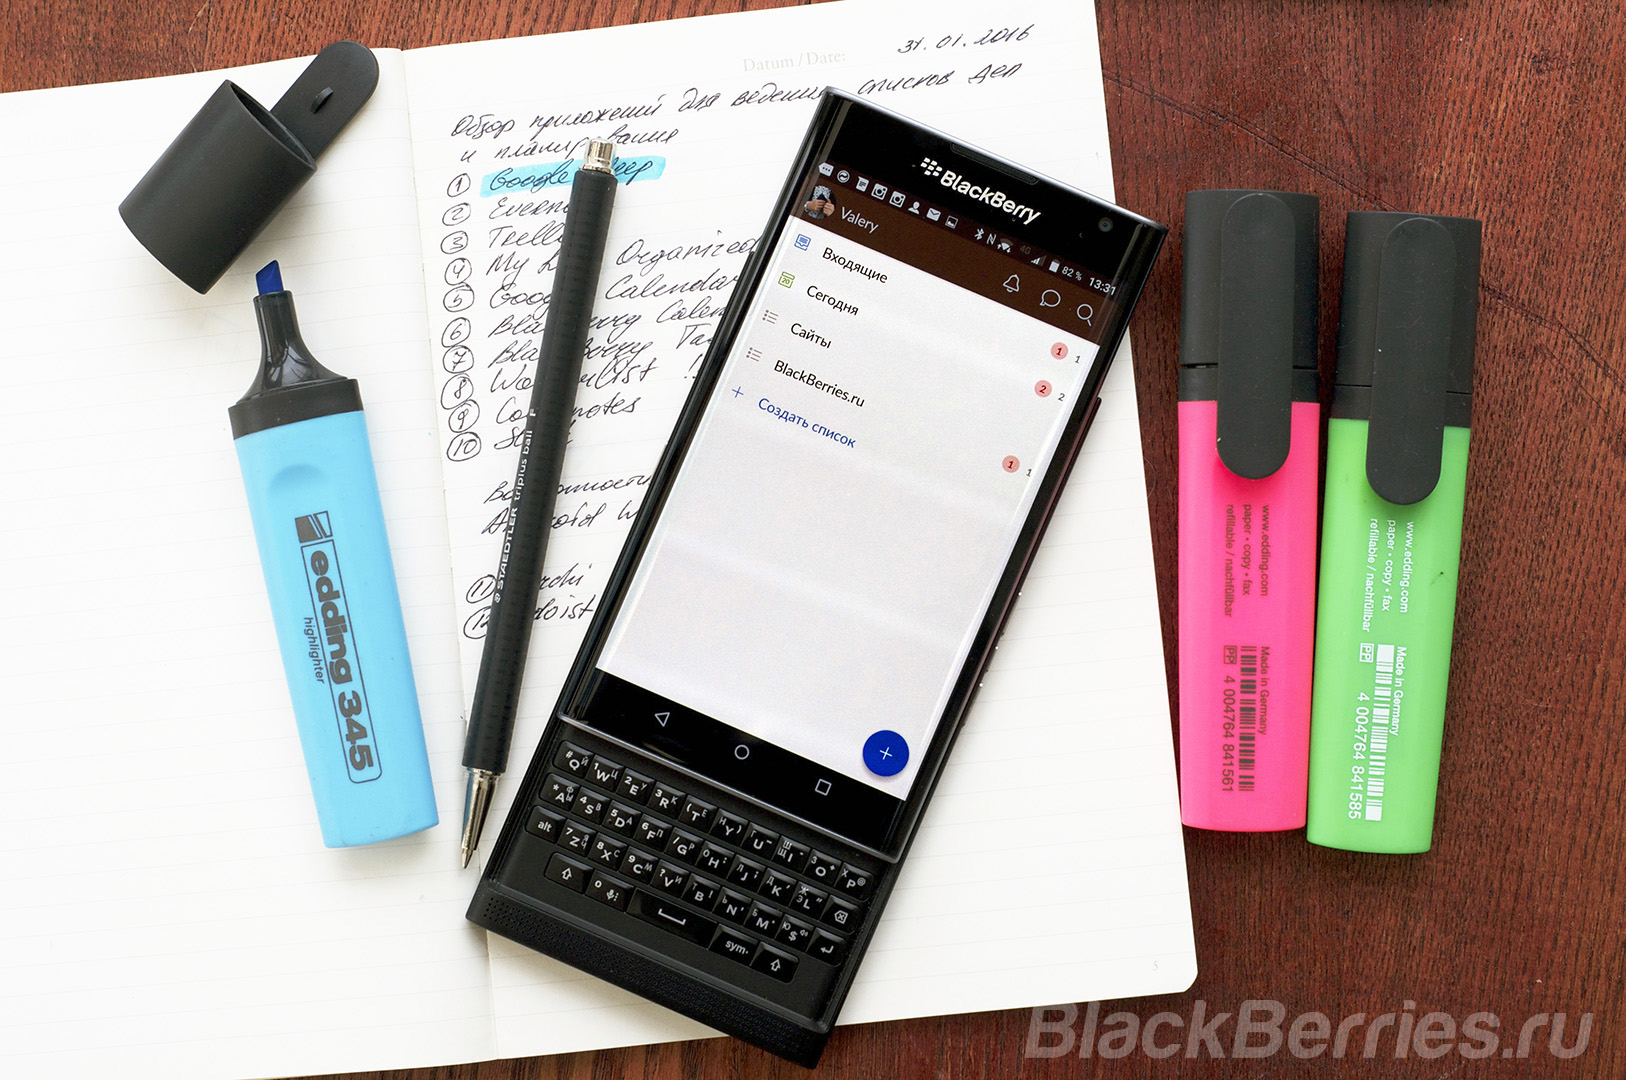 BlackBerry-Apps-20-02-19